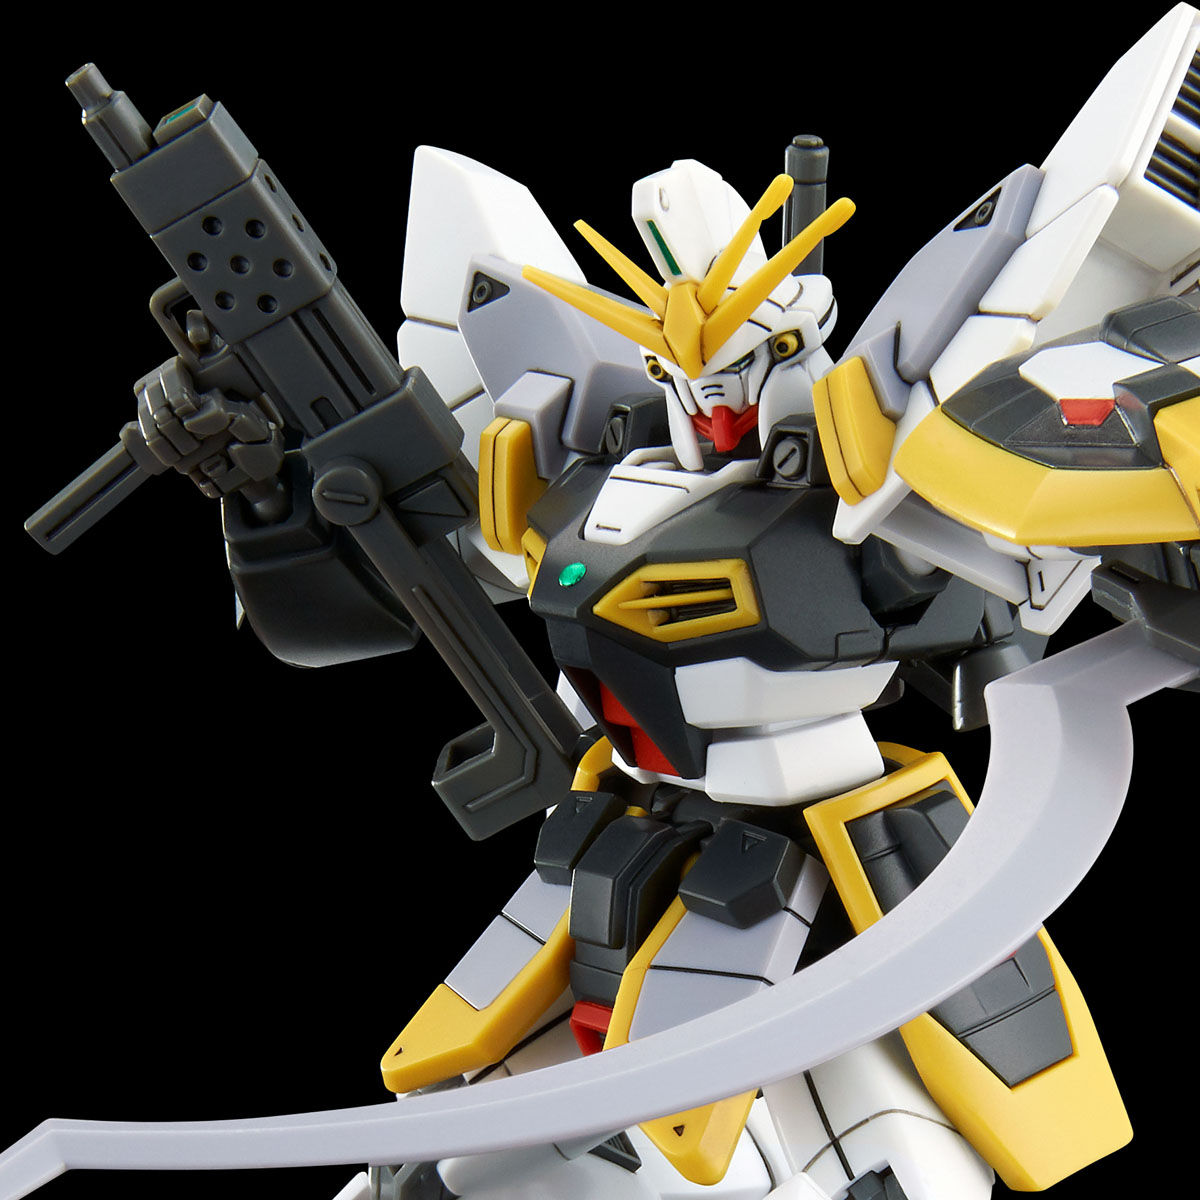 HGAC 1/144 XXXG-01SR2 Gundam Sandrock Custom